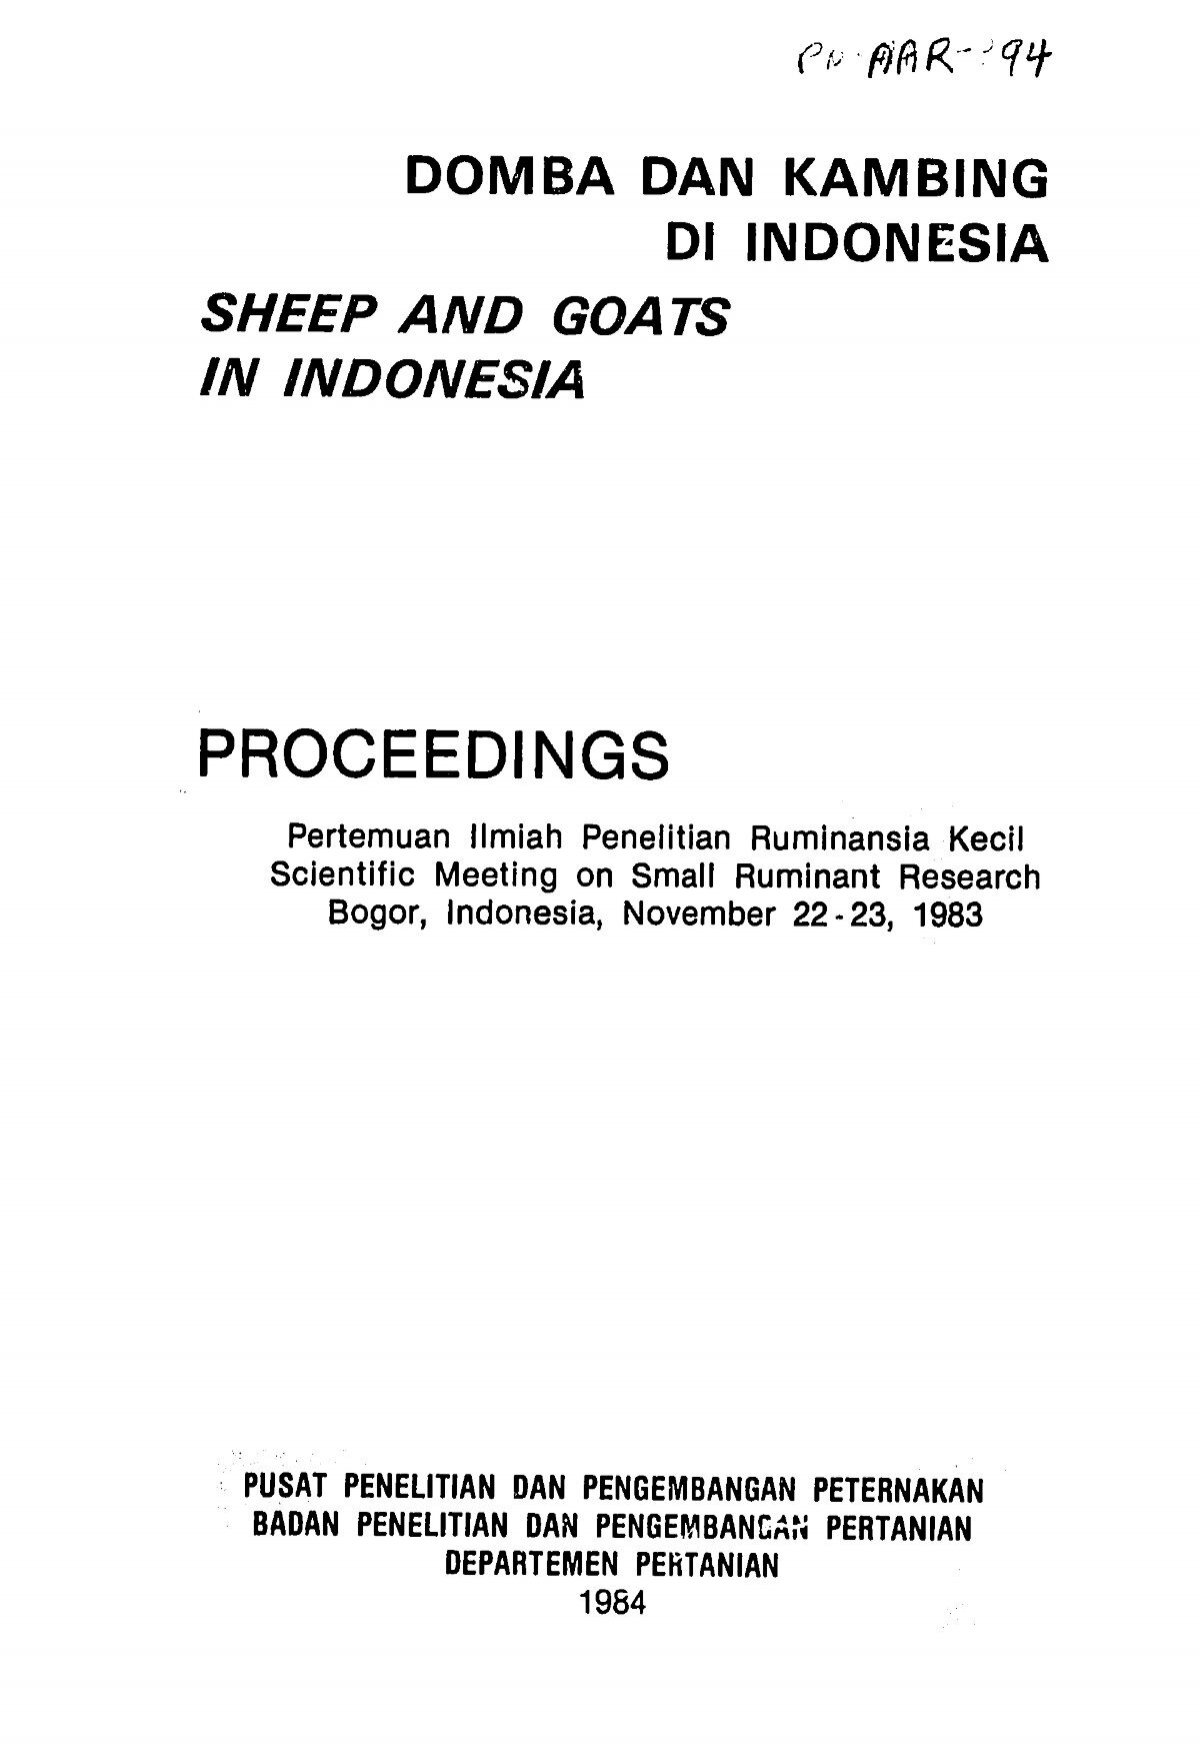 Proceedings - Pdf, 101 Mb - Usaid